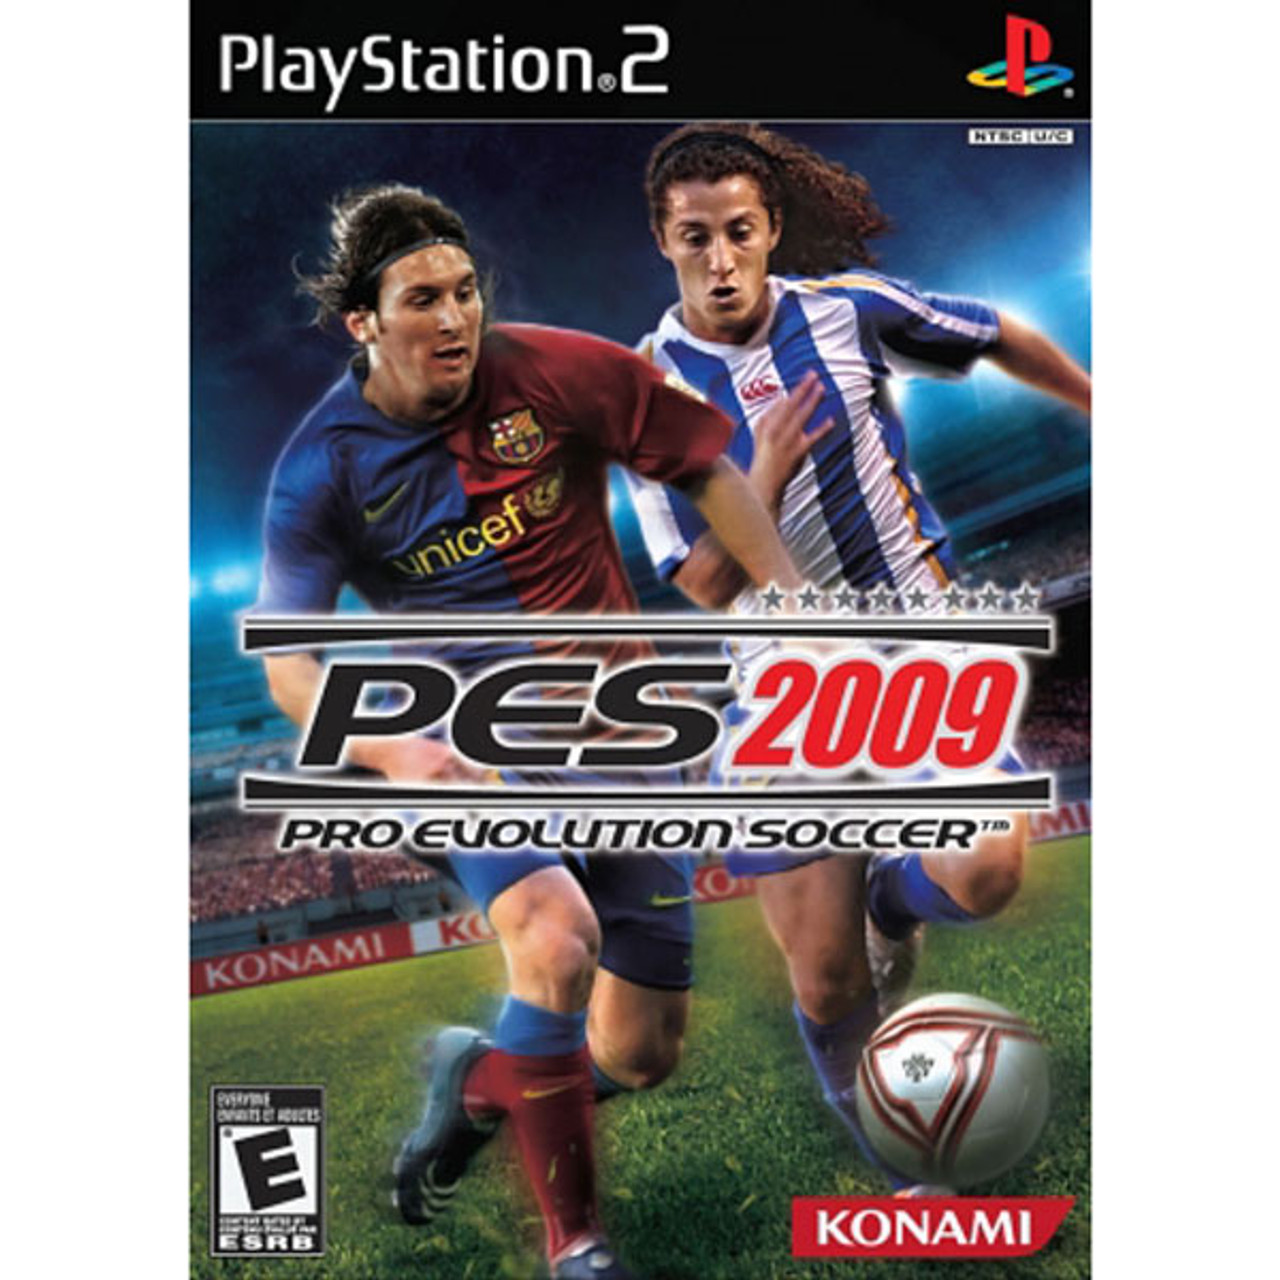 Pro Evolution Soccer 09 - CeX (PT): - Buy, Sell, Donate